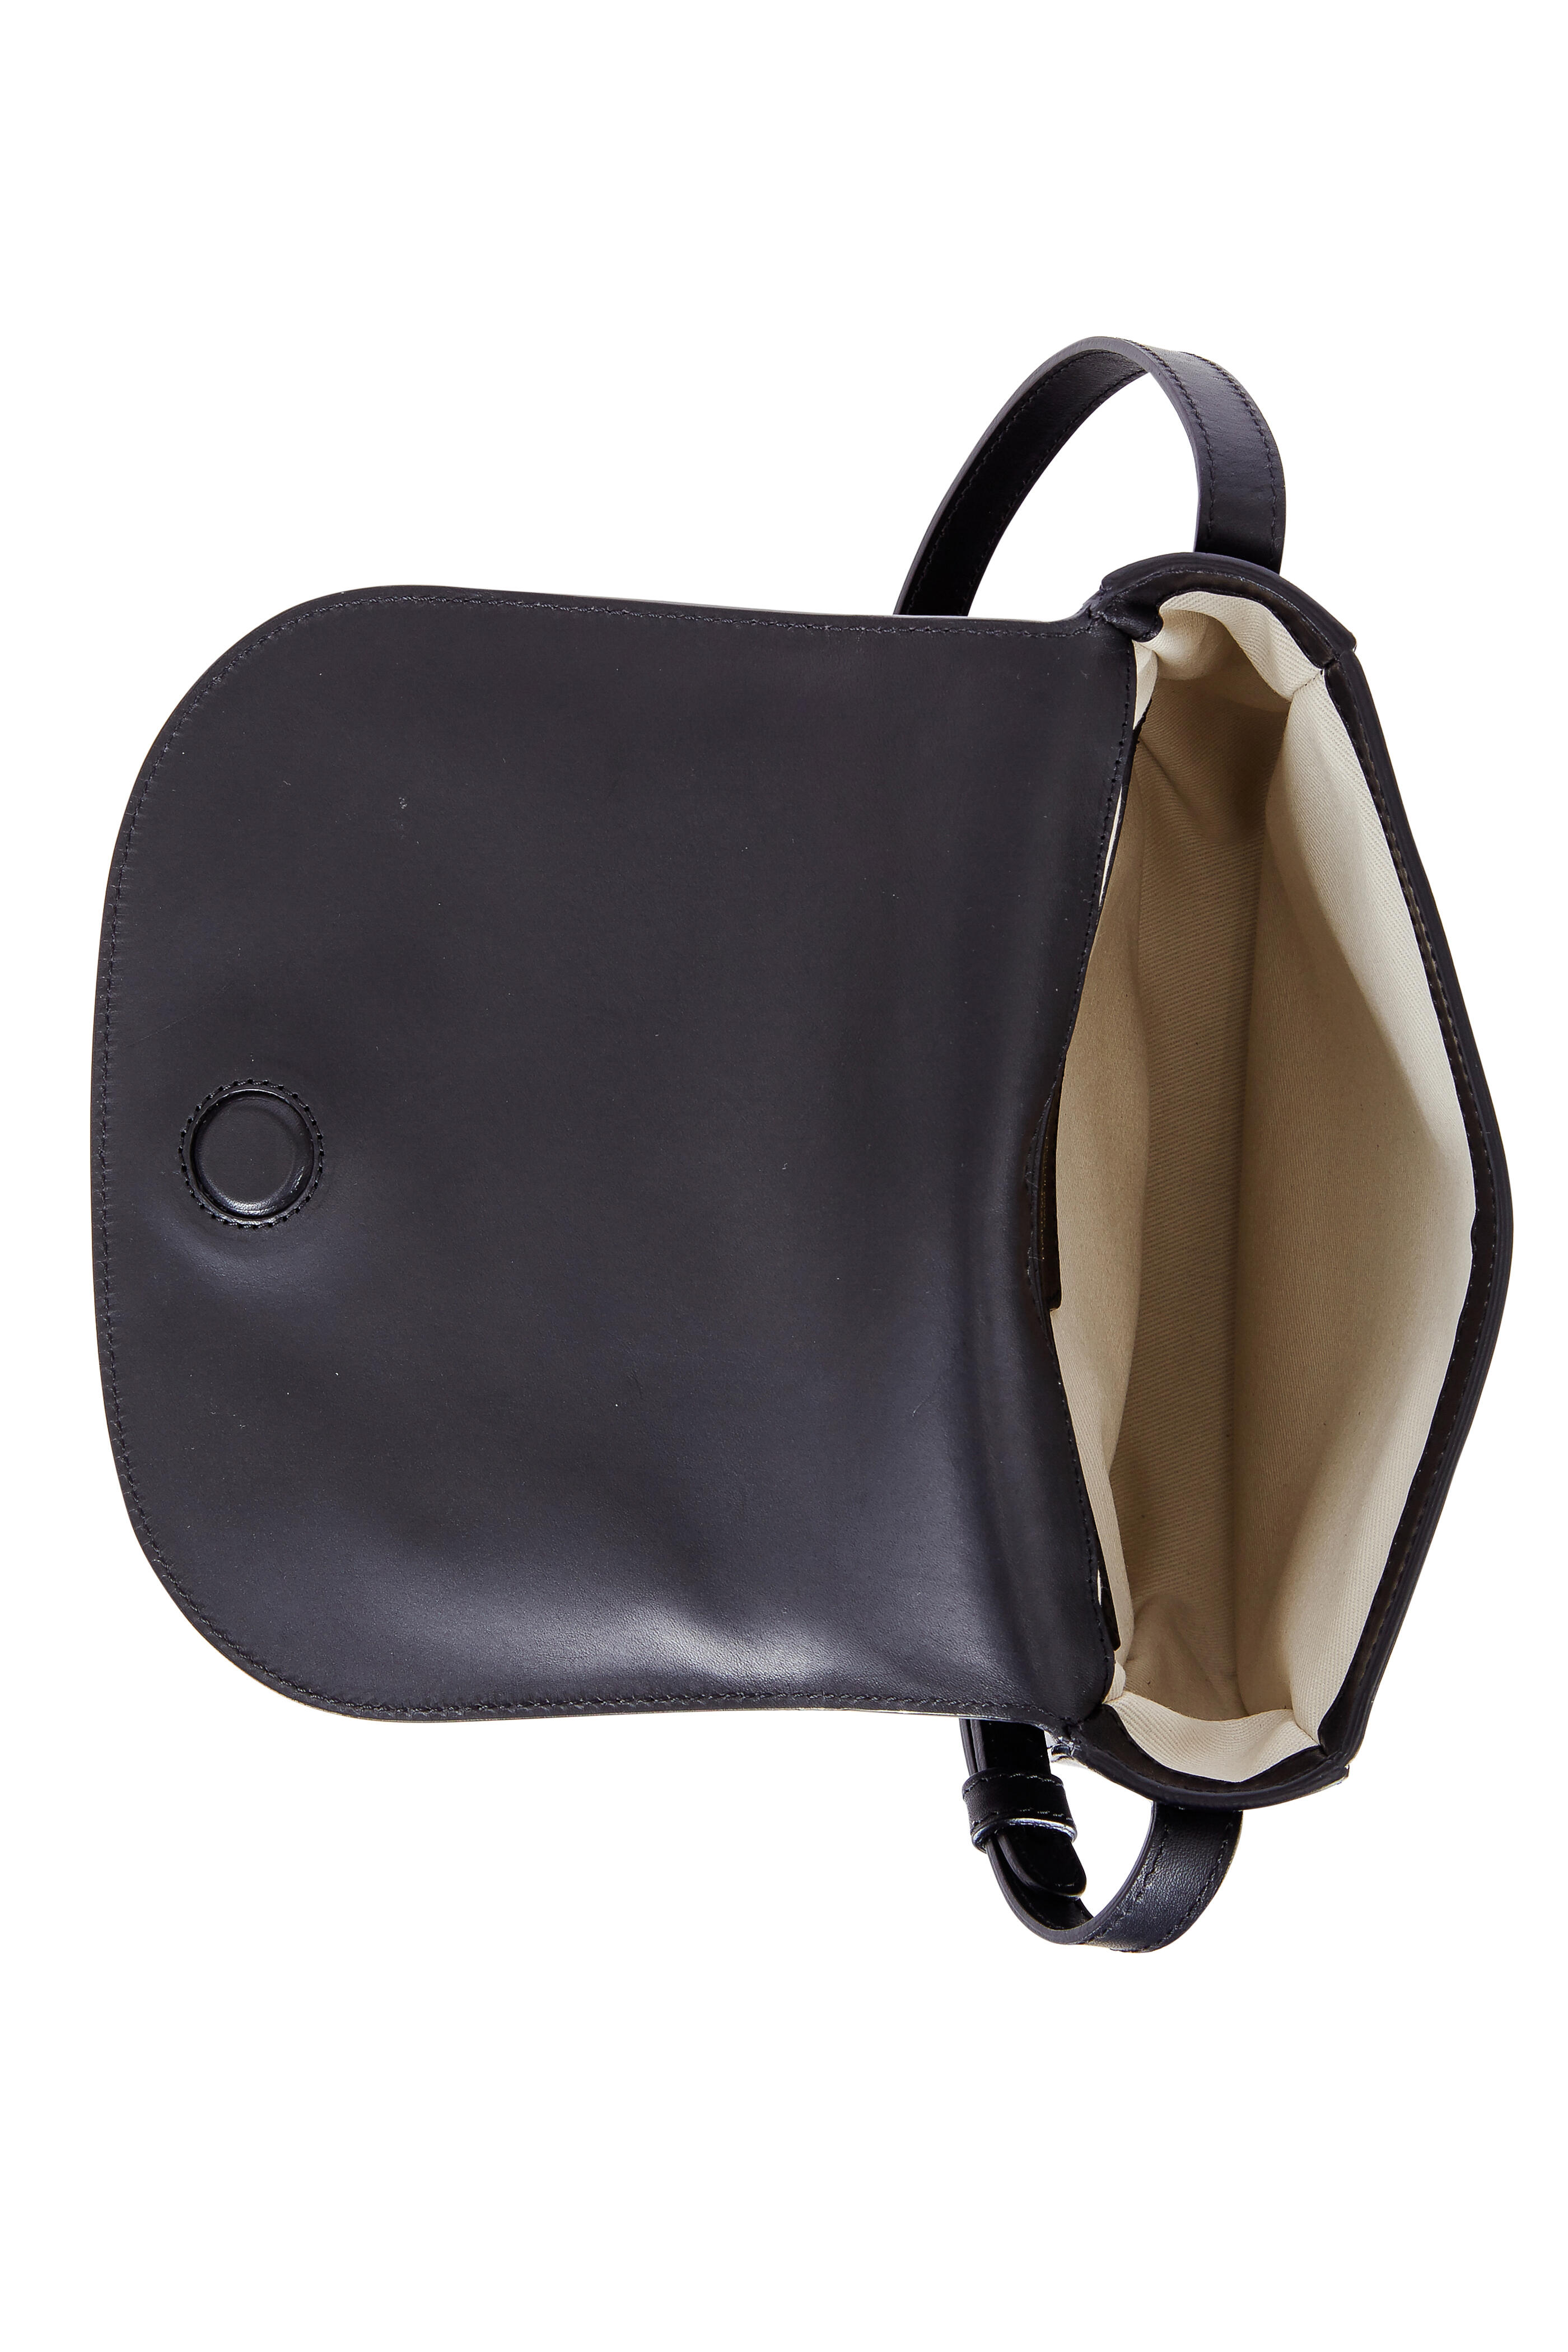 Mansur Gavriel Leather Crossbody Bag - Neutrals Crossbody Bags, Handbags -  WGY43153